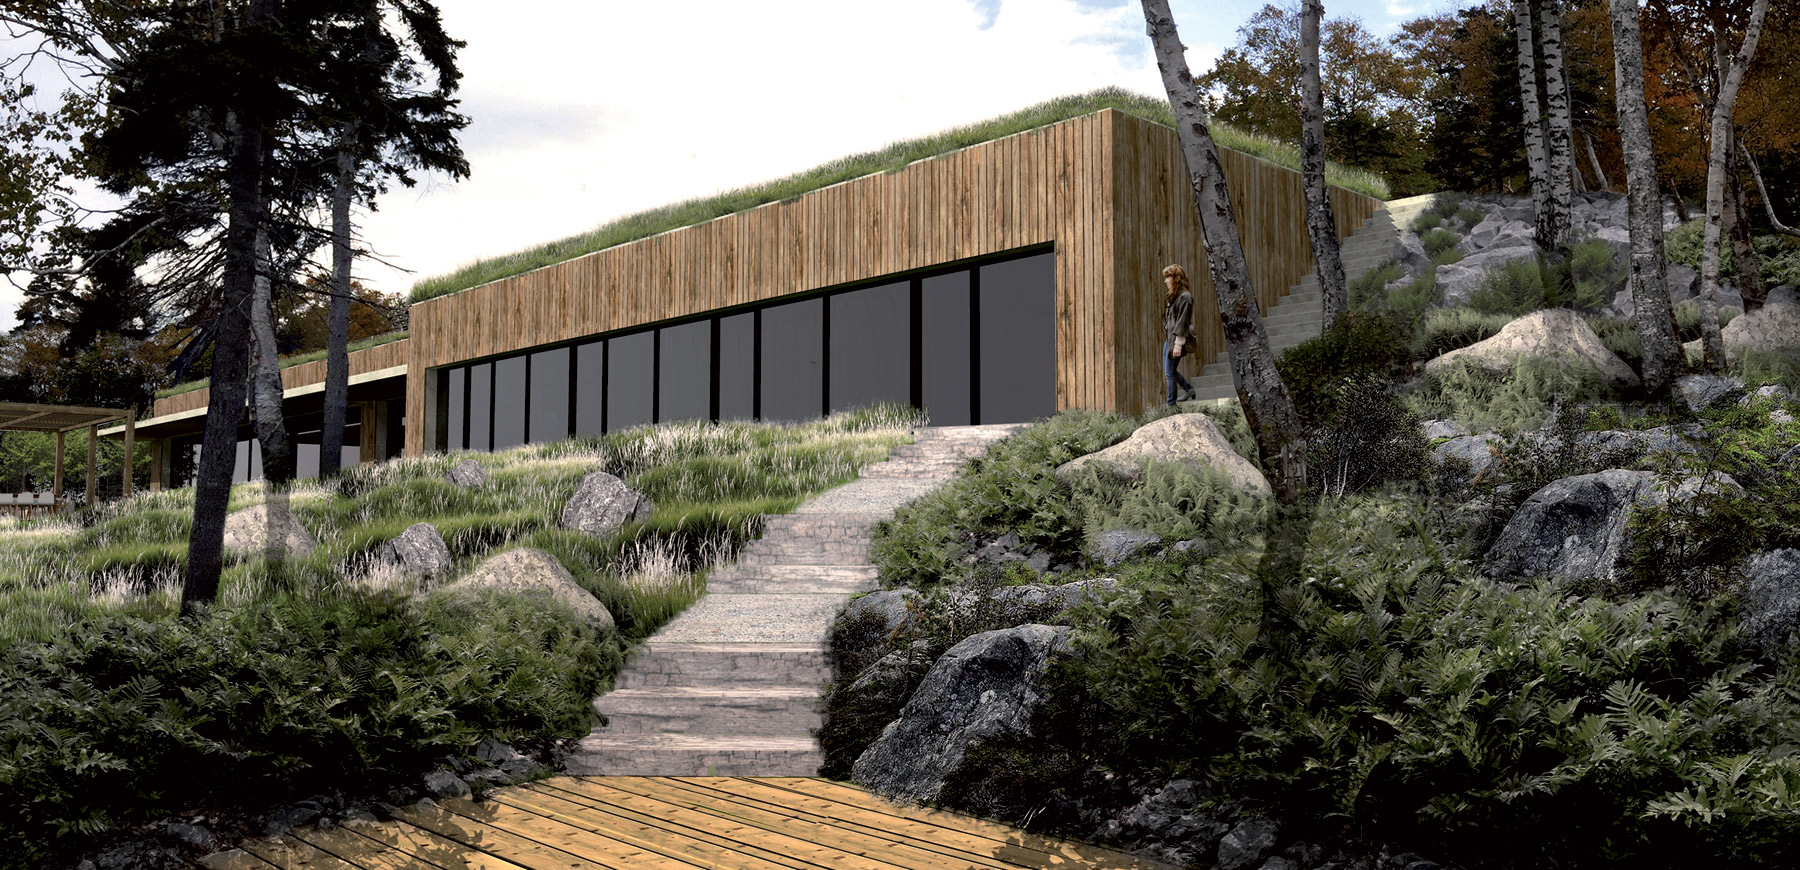 Projekt krajinné architektury v Novém Skotsku v Kanadě